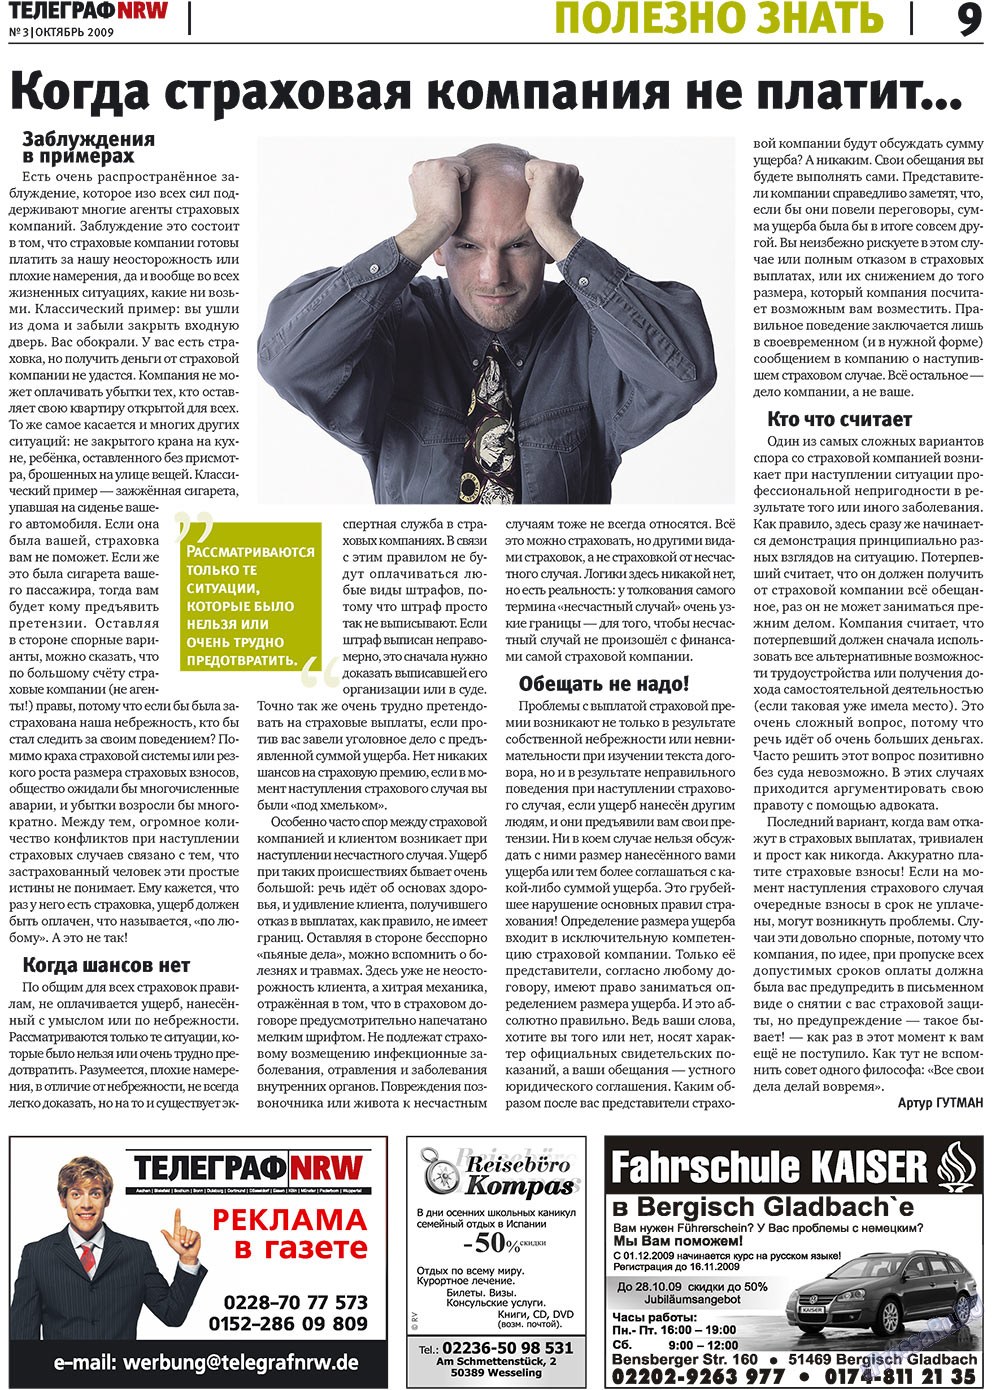 Телеграф NRW (газета). 2009 год, номер 3, стр. 9